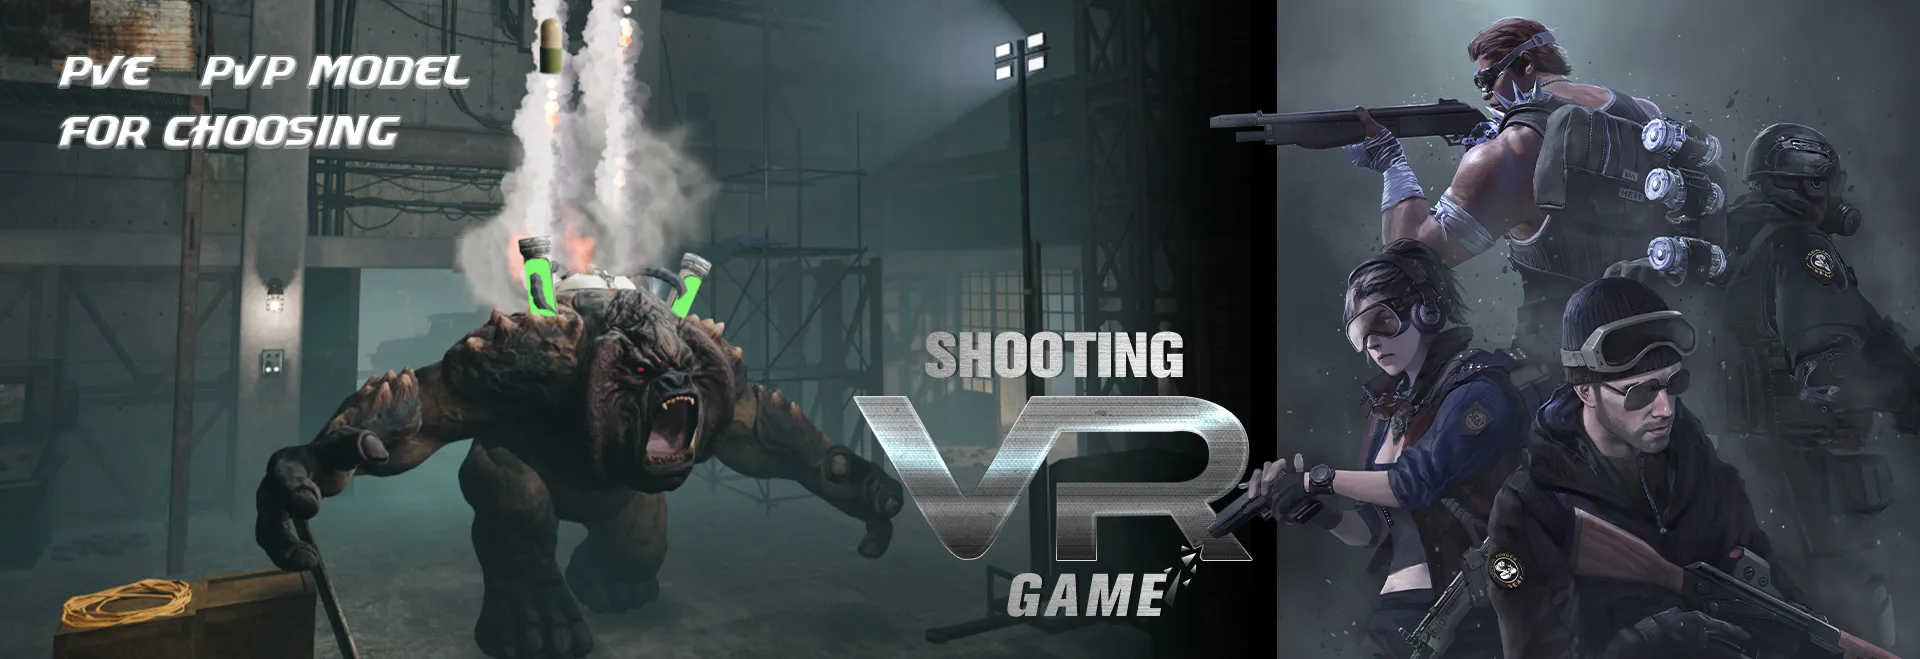 Juego de disparos de realidad virtual